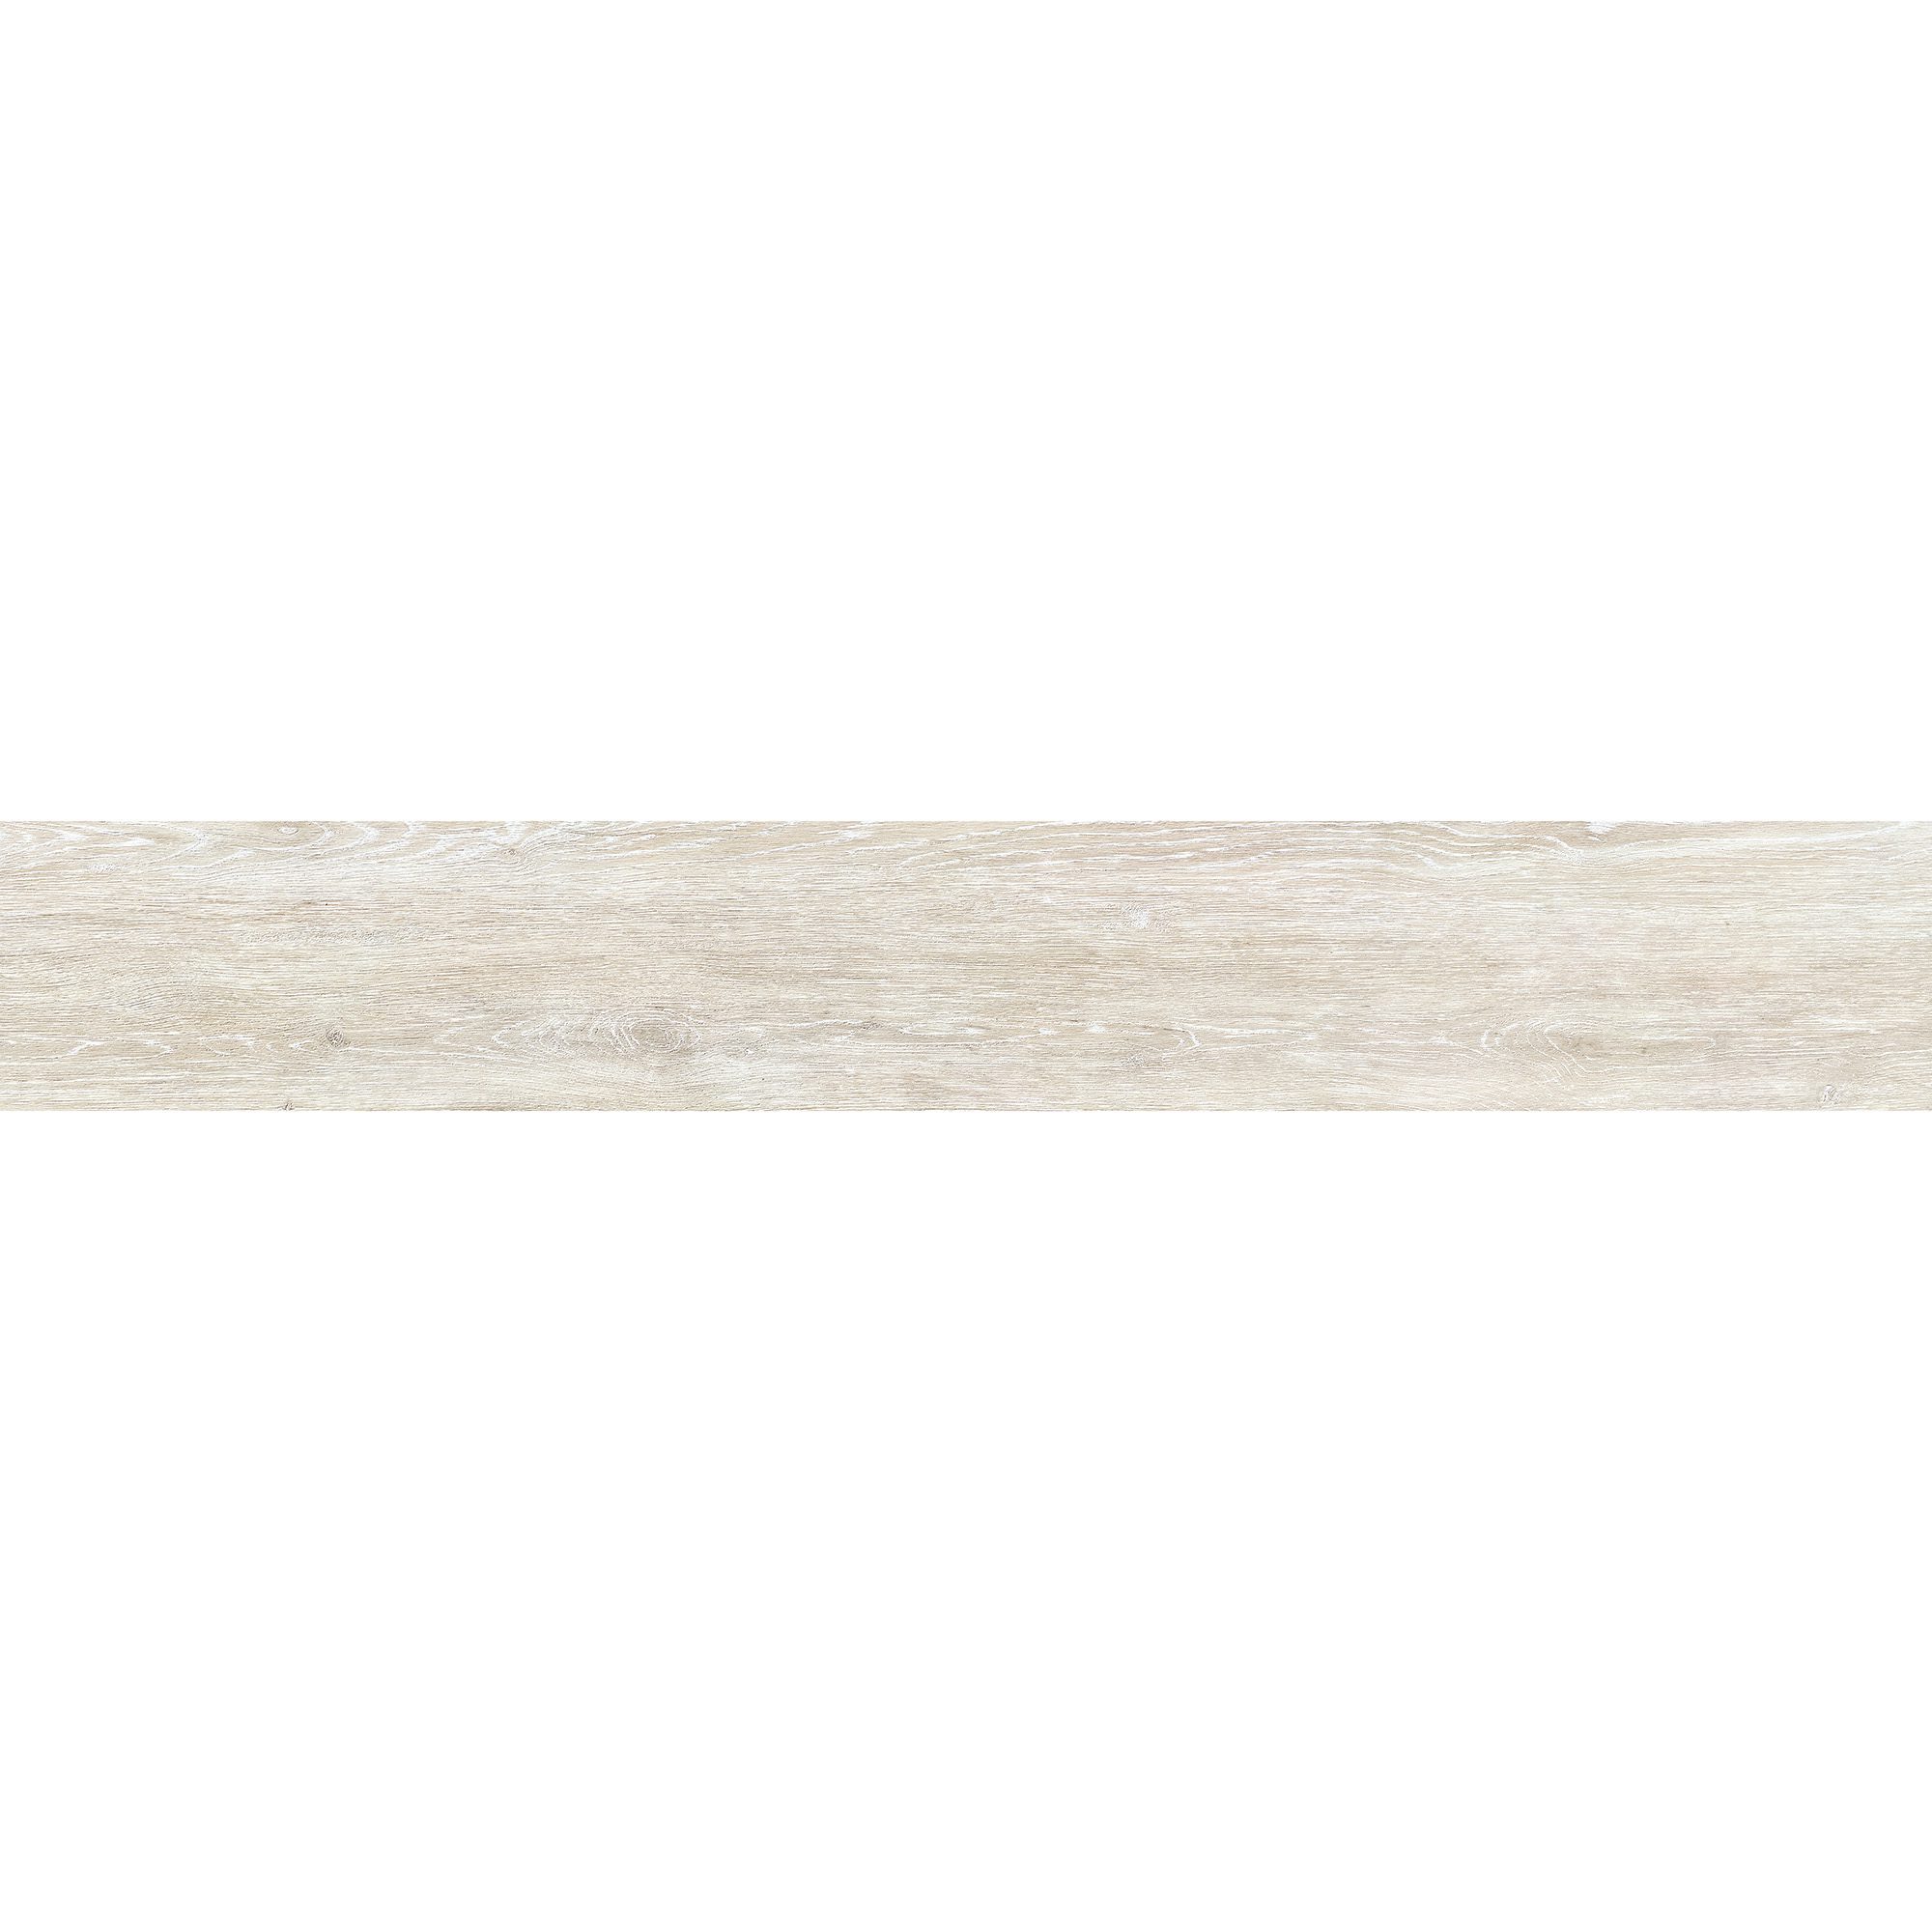 Buy Aqua Resilience Topwood LVP Vanilla 7x48 | Best Prices